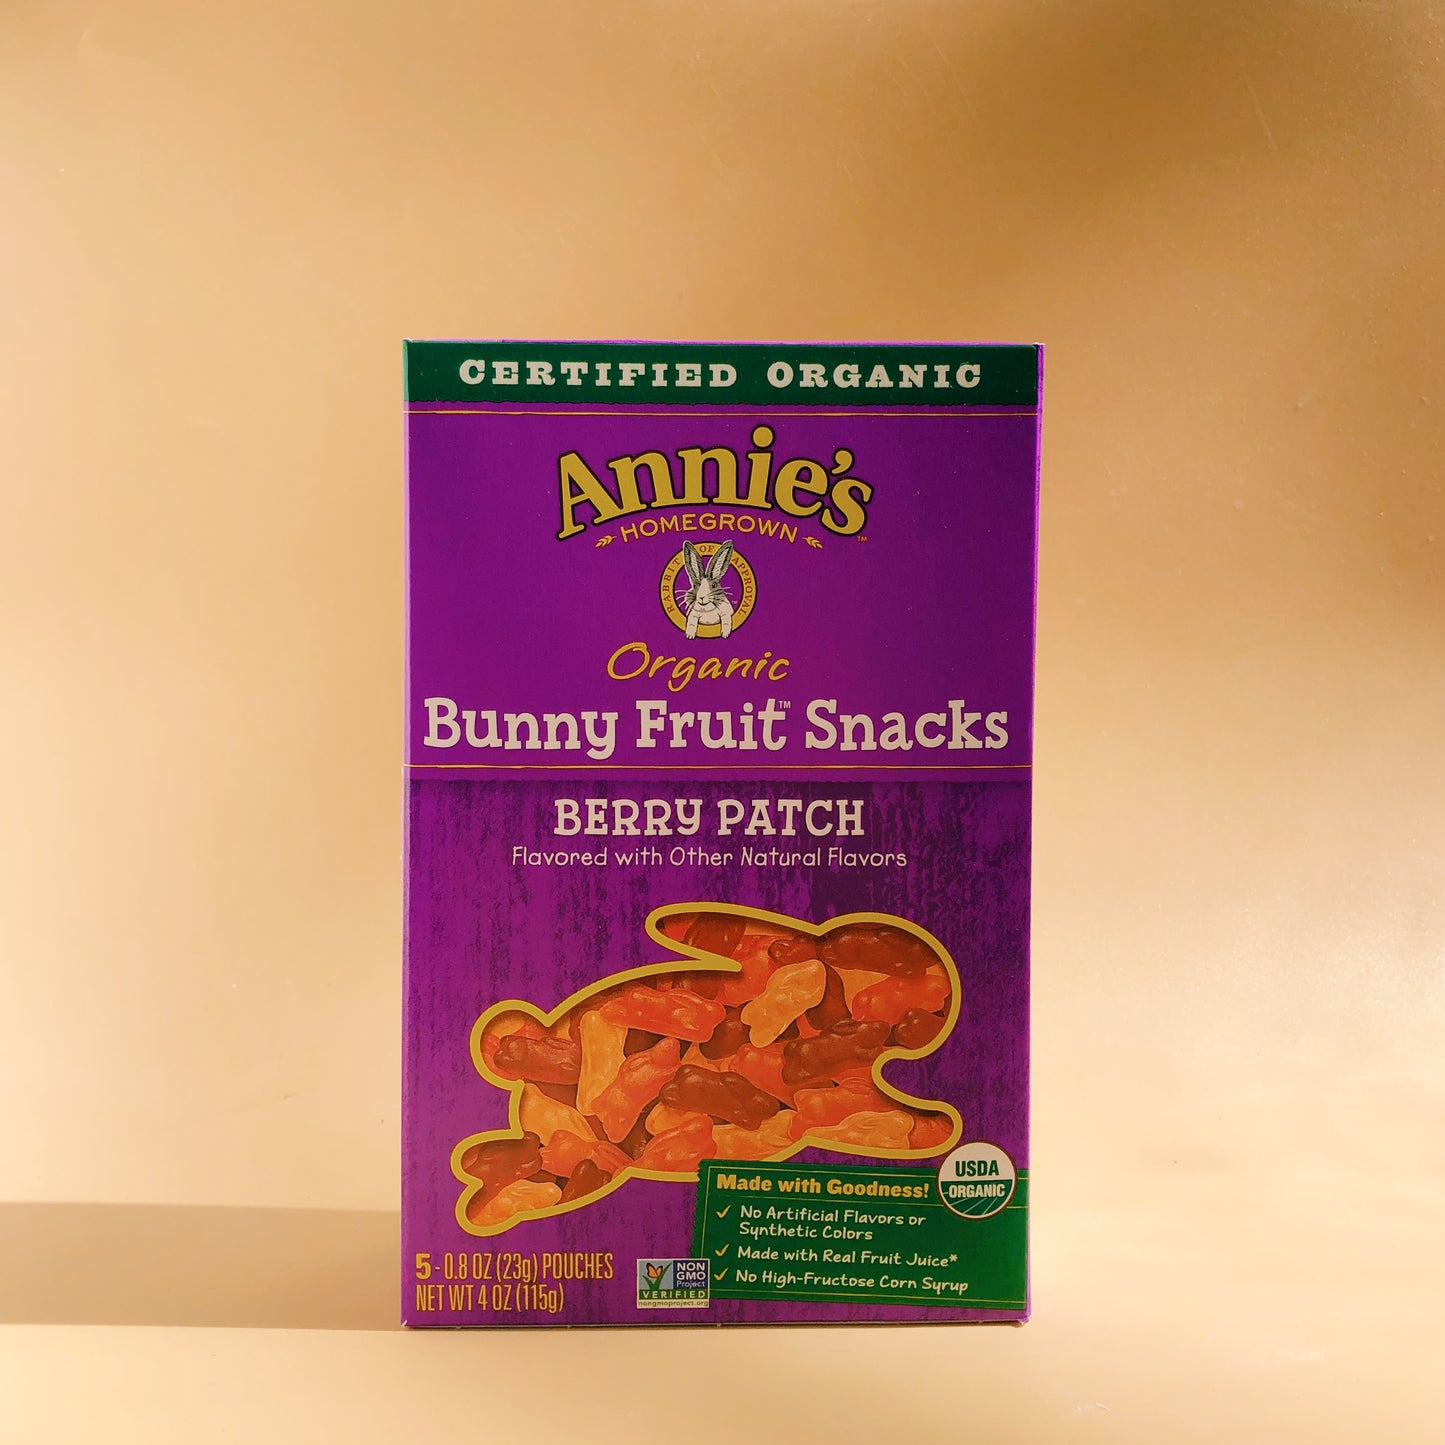 Annie’s bunny fruit snacks